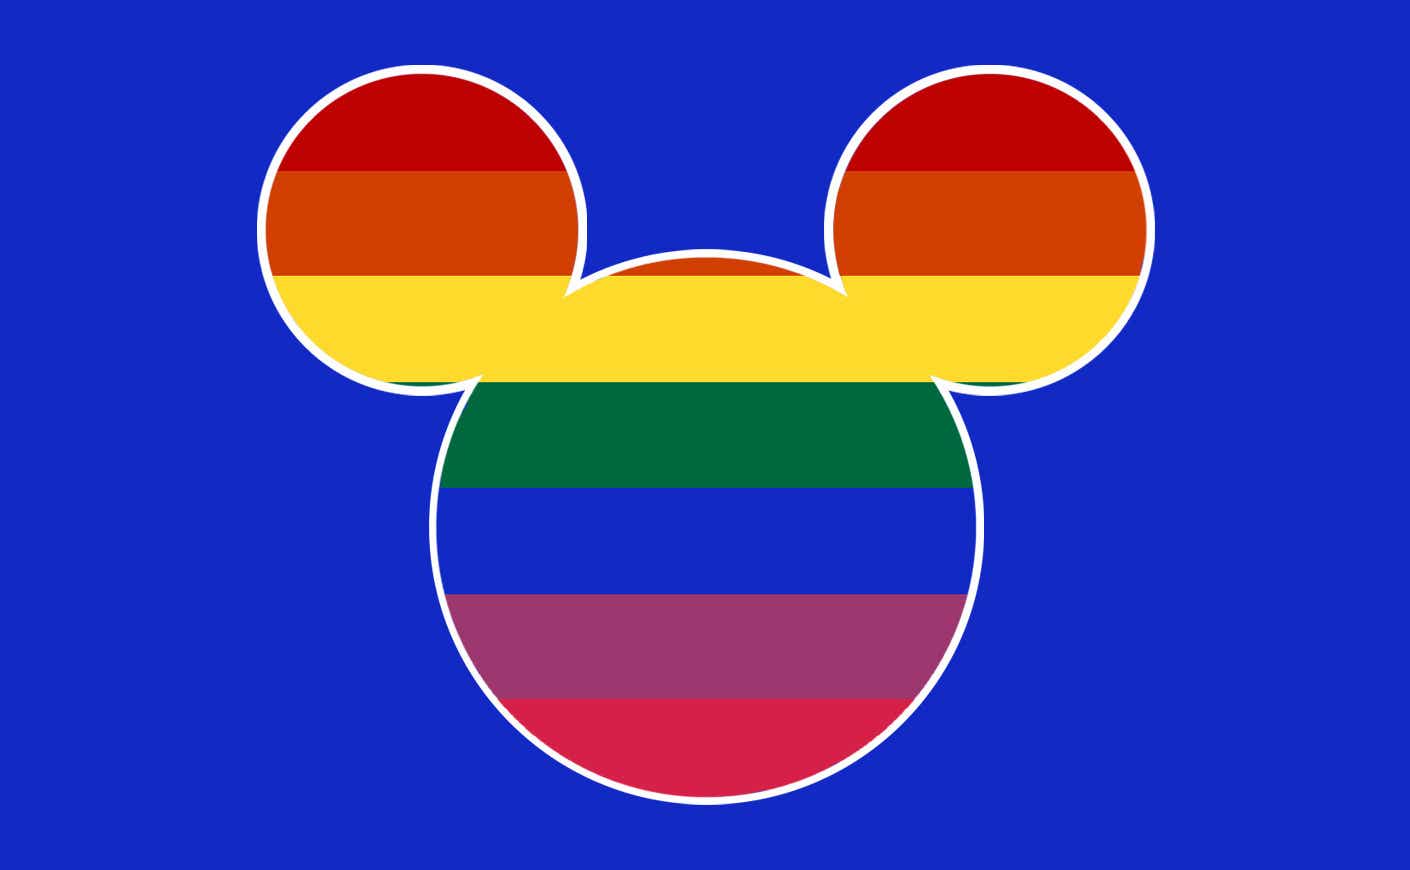 Disney symbol